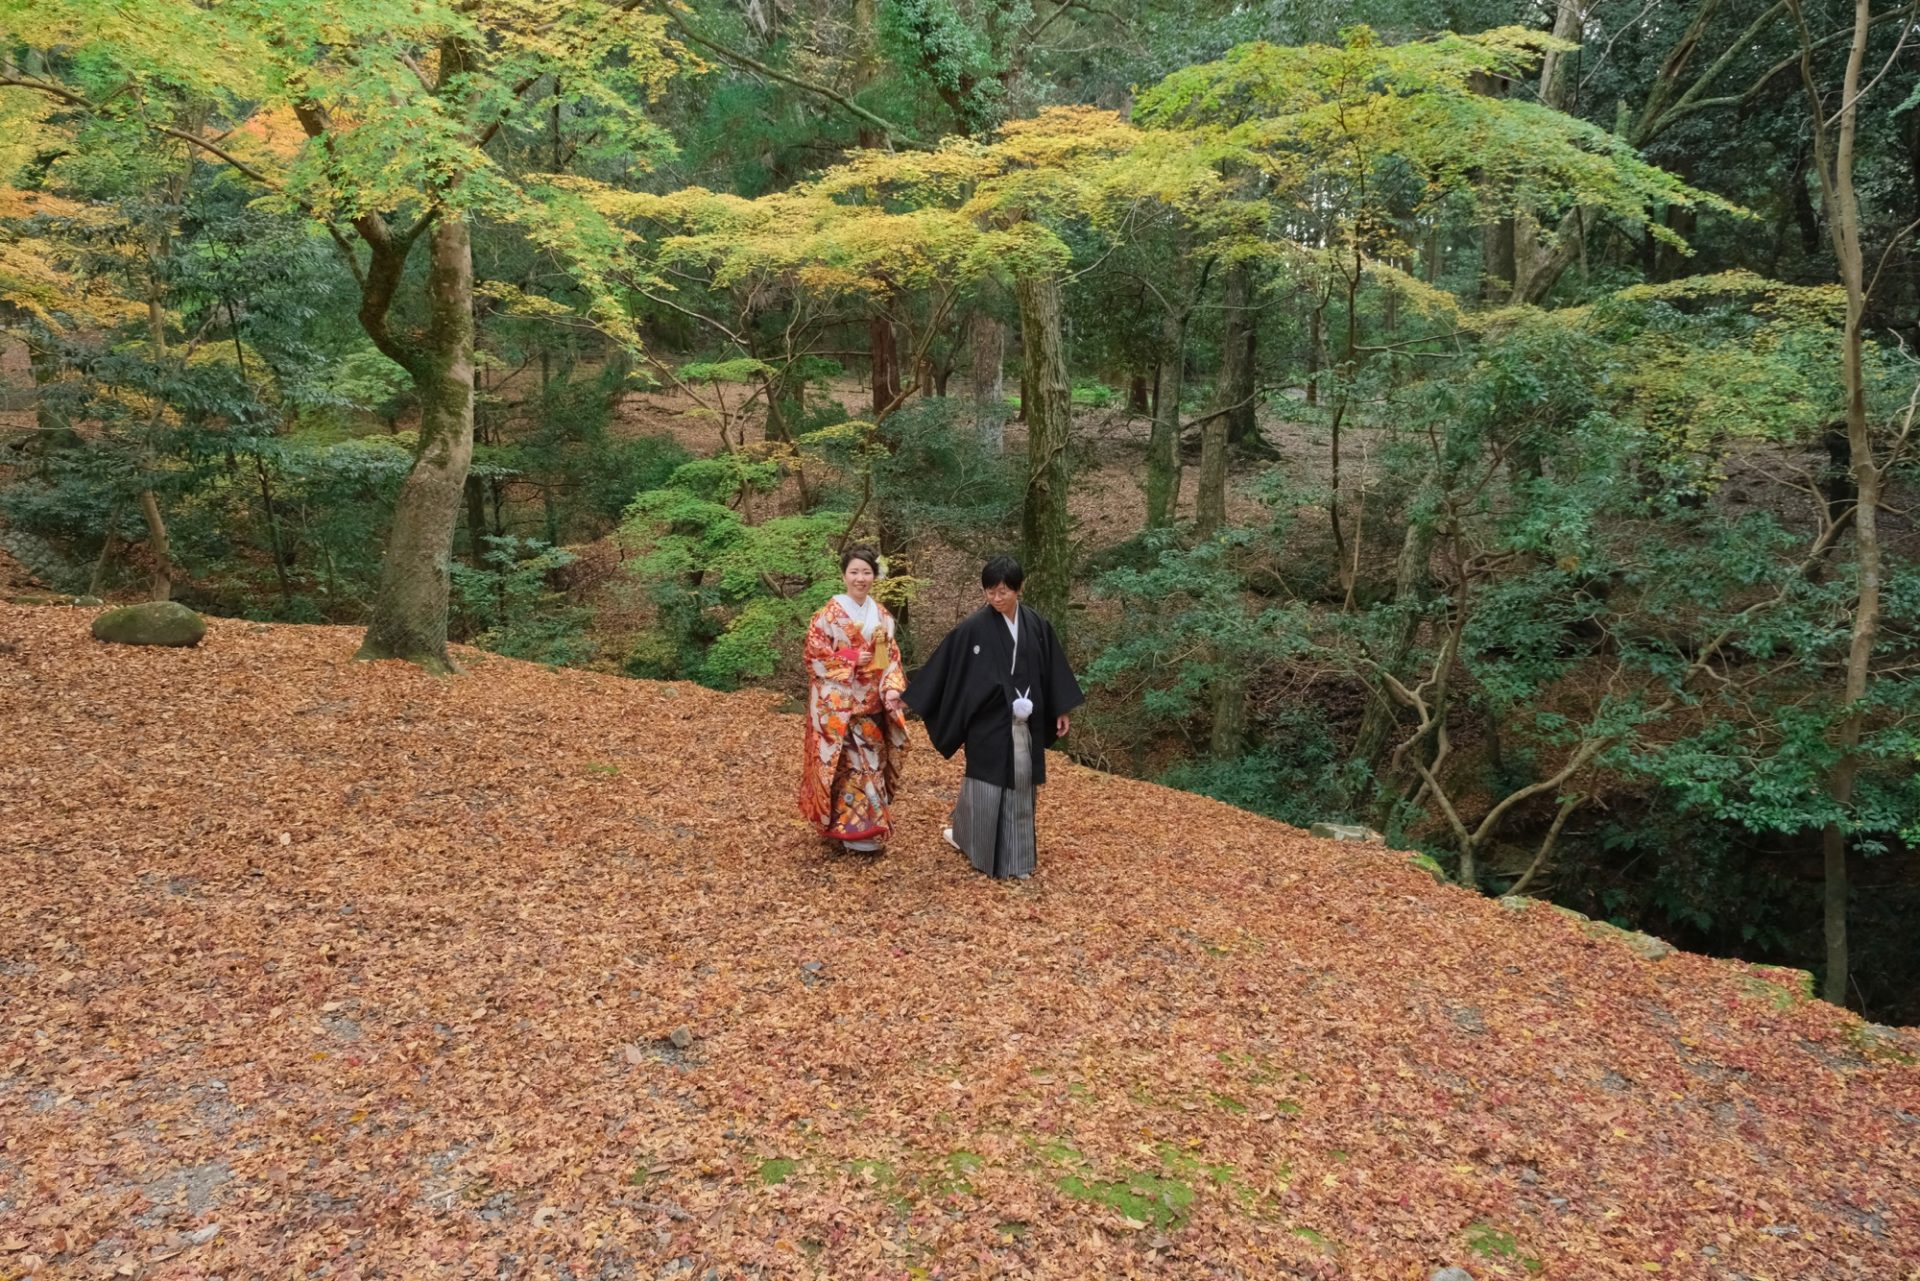 紅葉の奈良で和装フォトウエディング